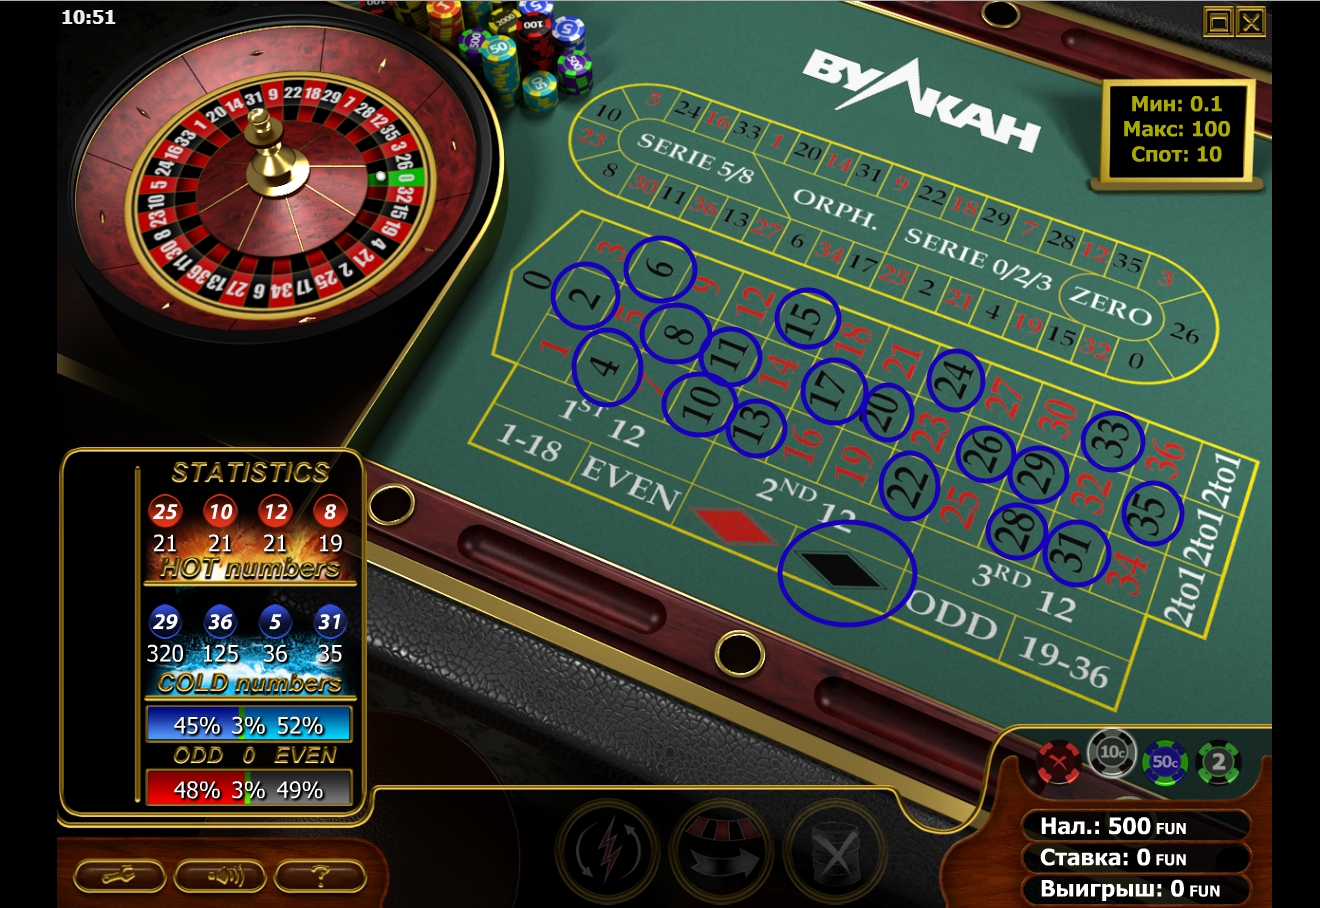 Казино анна рулетка онлайн играть бесплатно без регистрации казино император онлайн играть